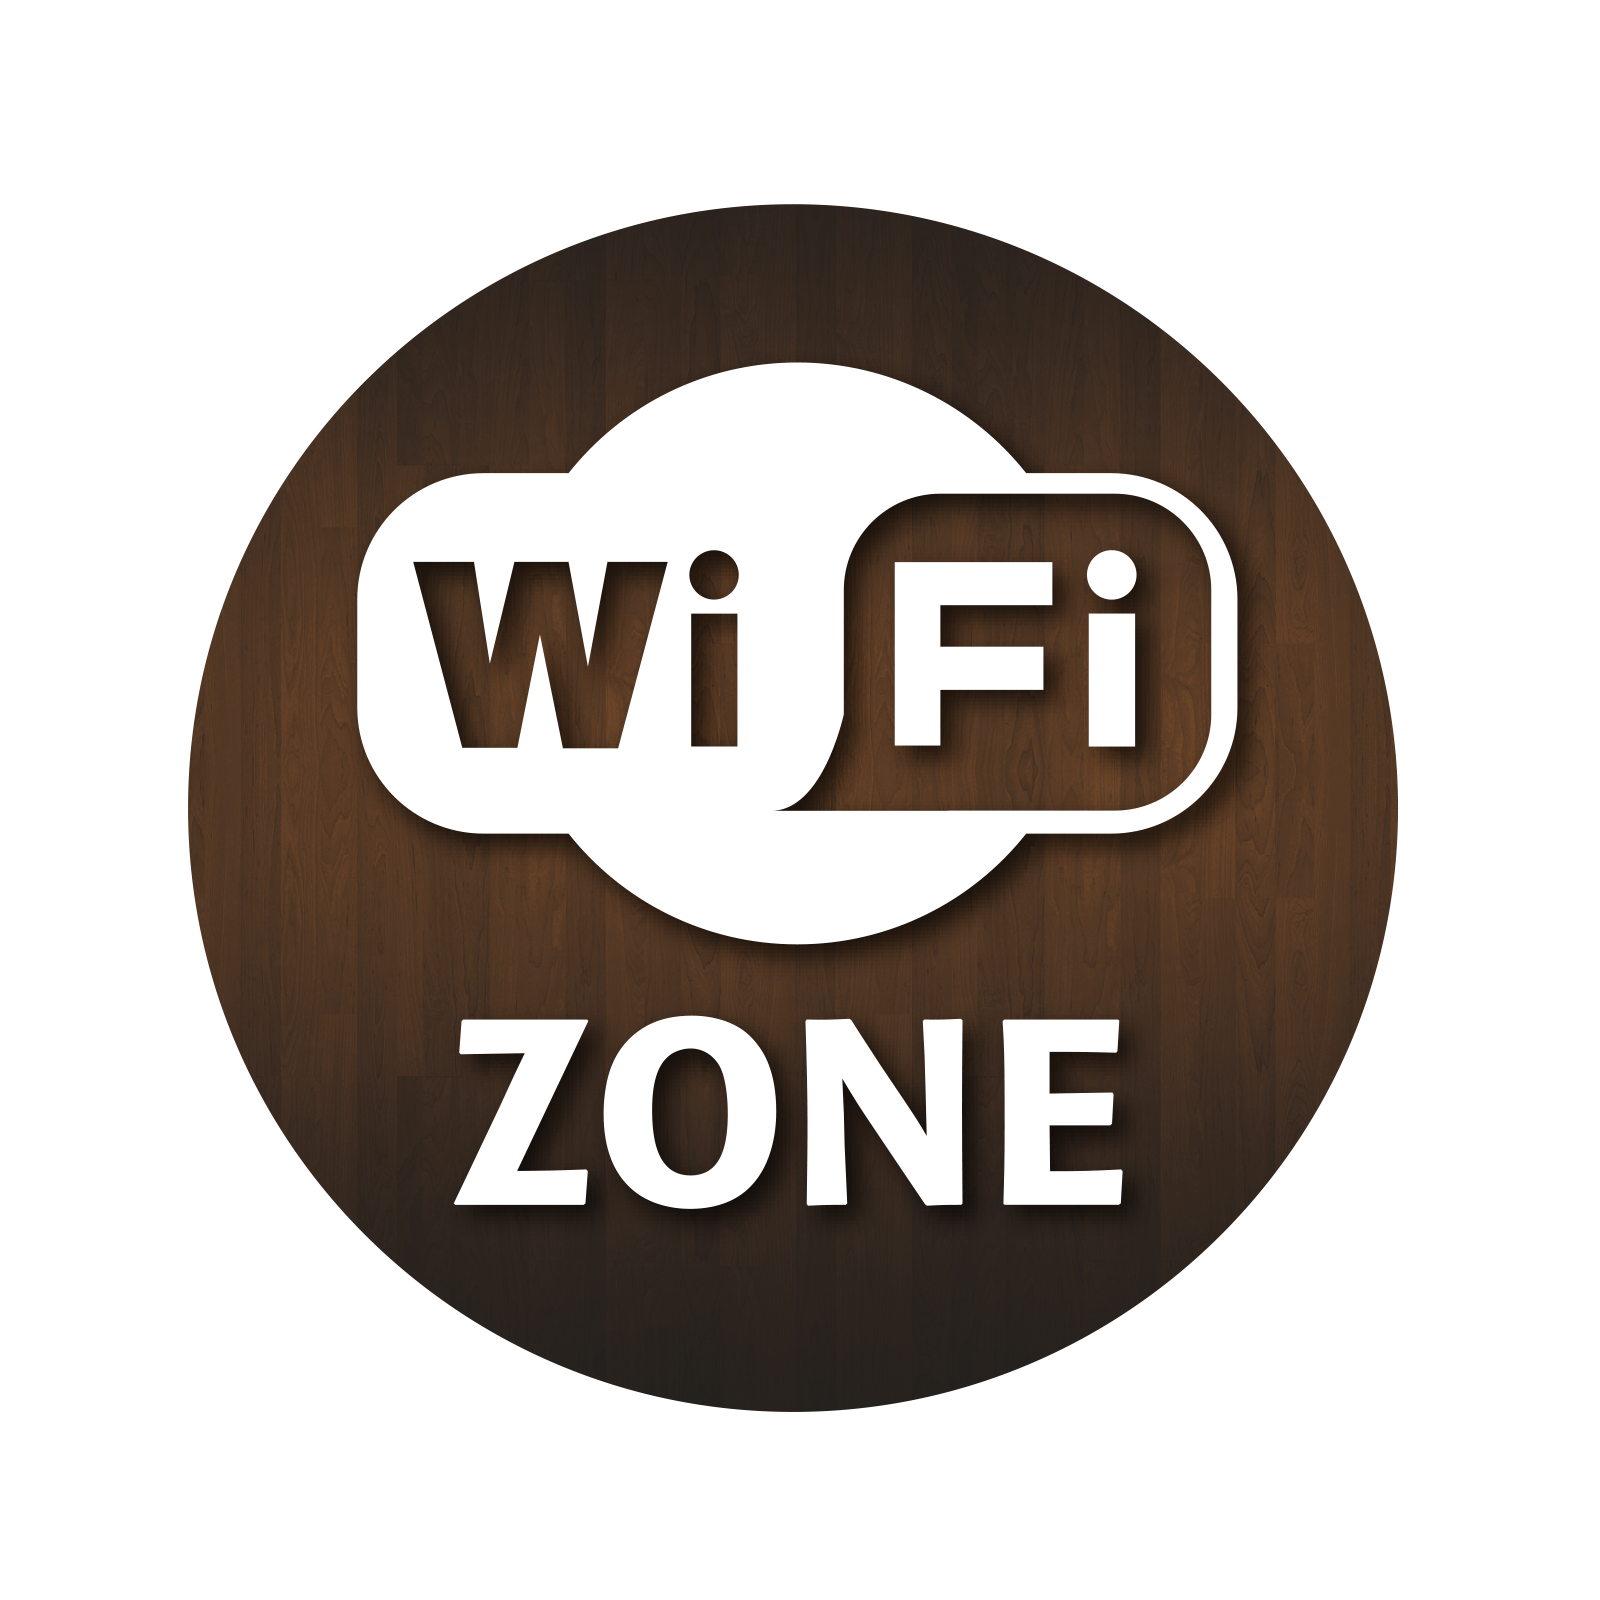 Wifi Zone Window Sticker.